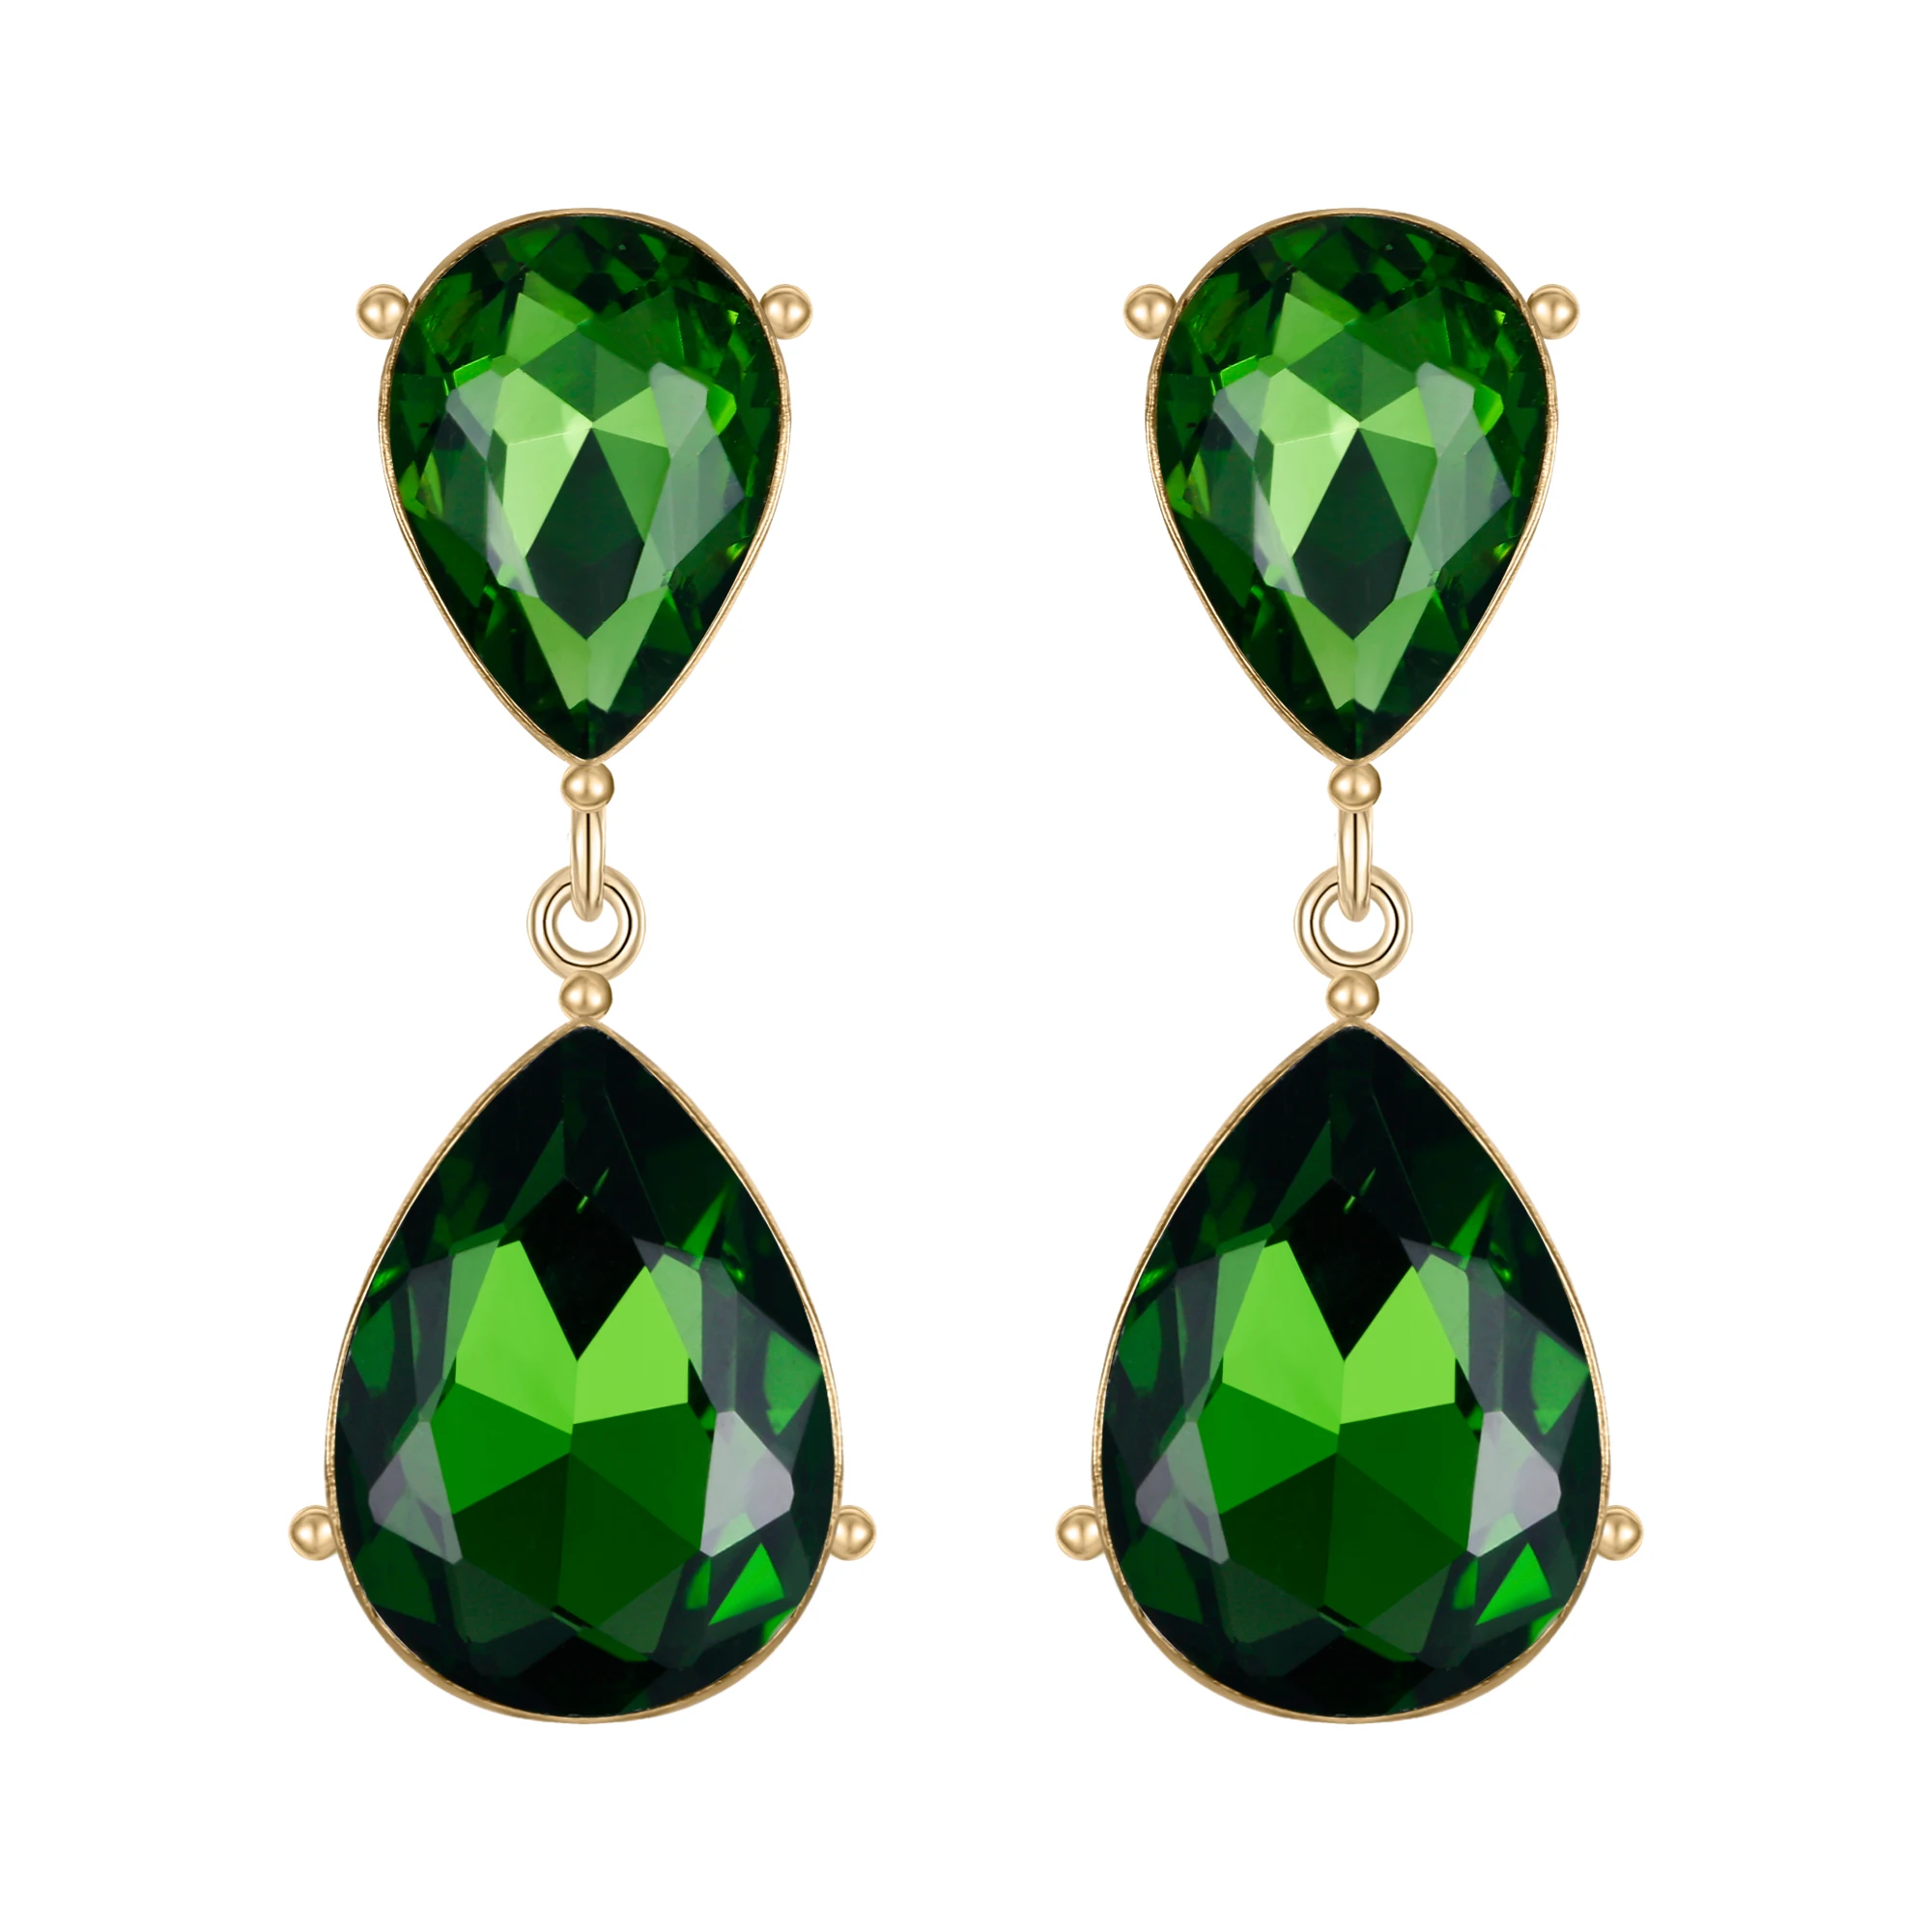 

Teardrop Dangle Earrings Women Crystal Drop Pierced Party Jewelry Accessories Gift Emerald Green Gold Femme Pendientes Mujer